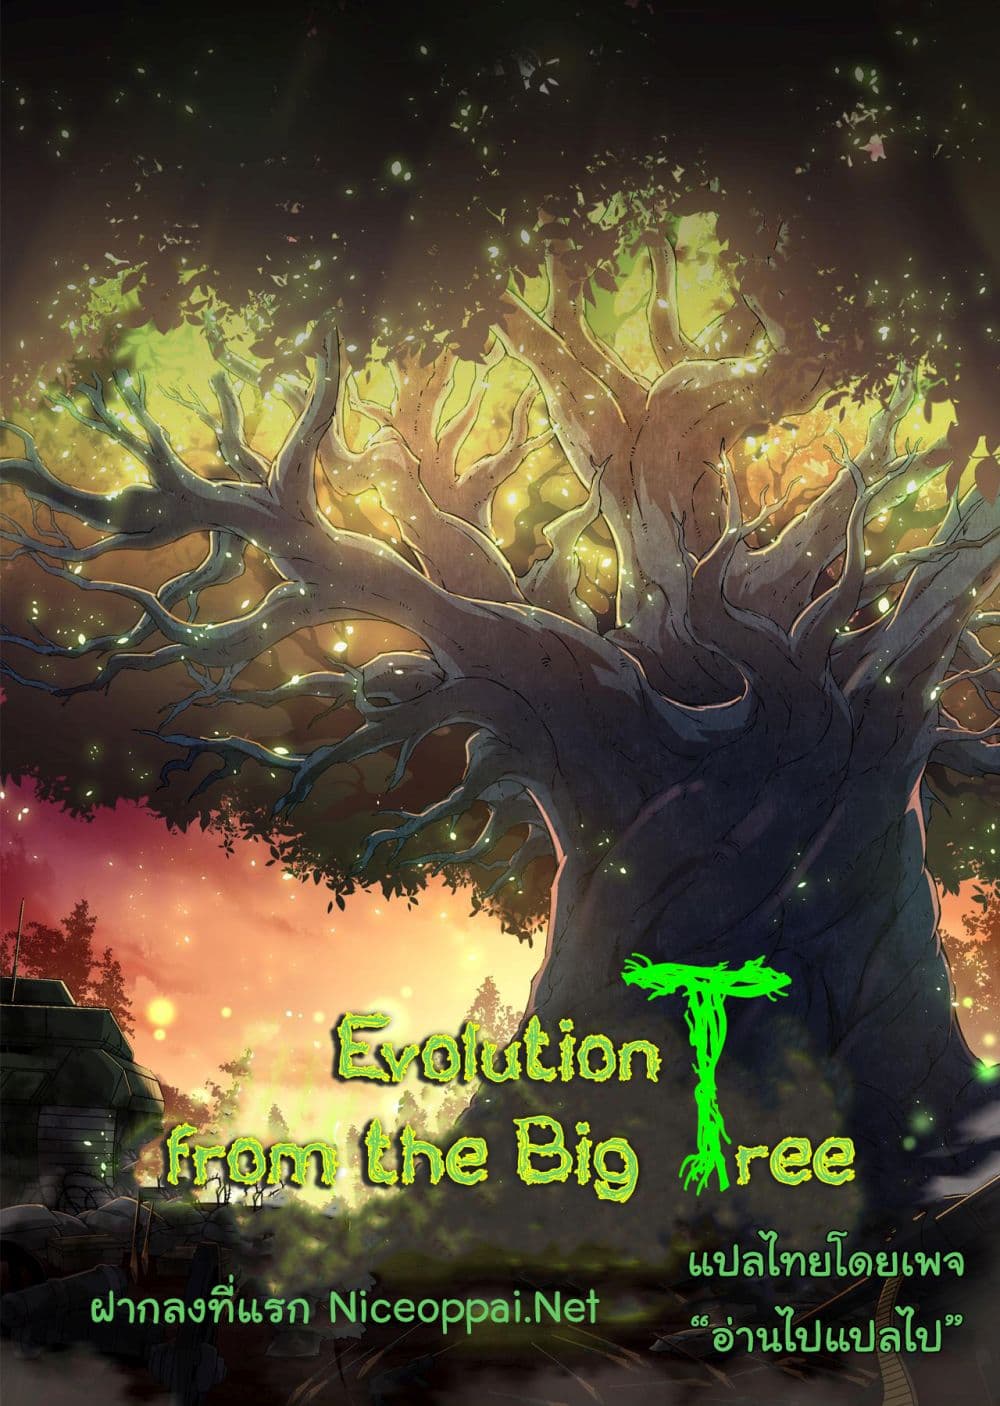 Evolution from the Big Tree Ã Â¸â€¢Ã Â¸Â­Ã Â¸â„¢Ã Â¸â€”Ã Â¸ÂµÃ Â¹Ë† 32 (56)